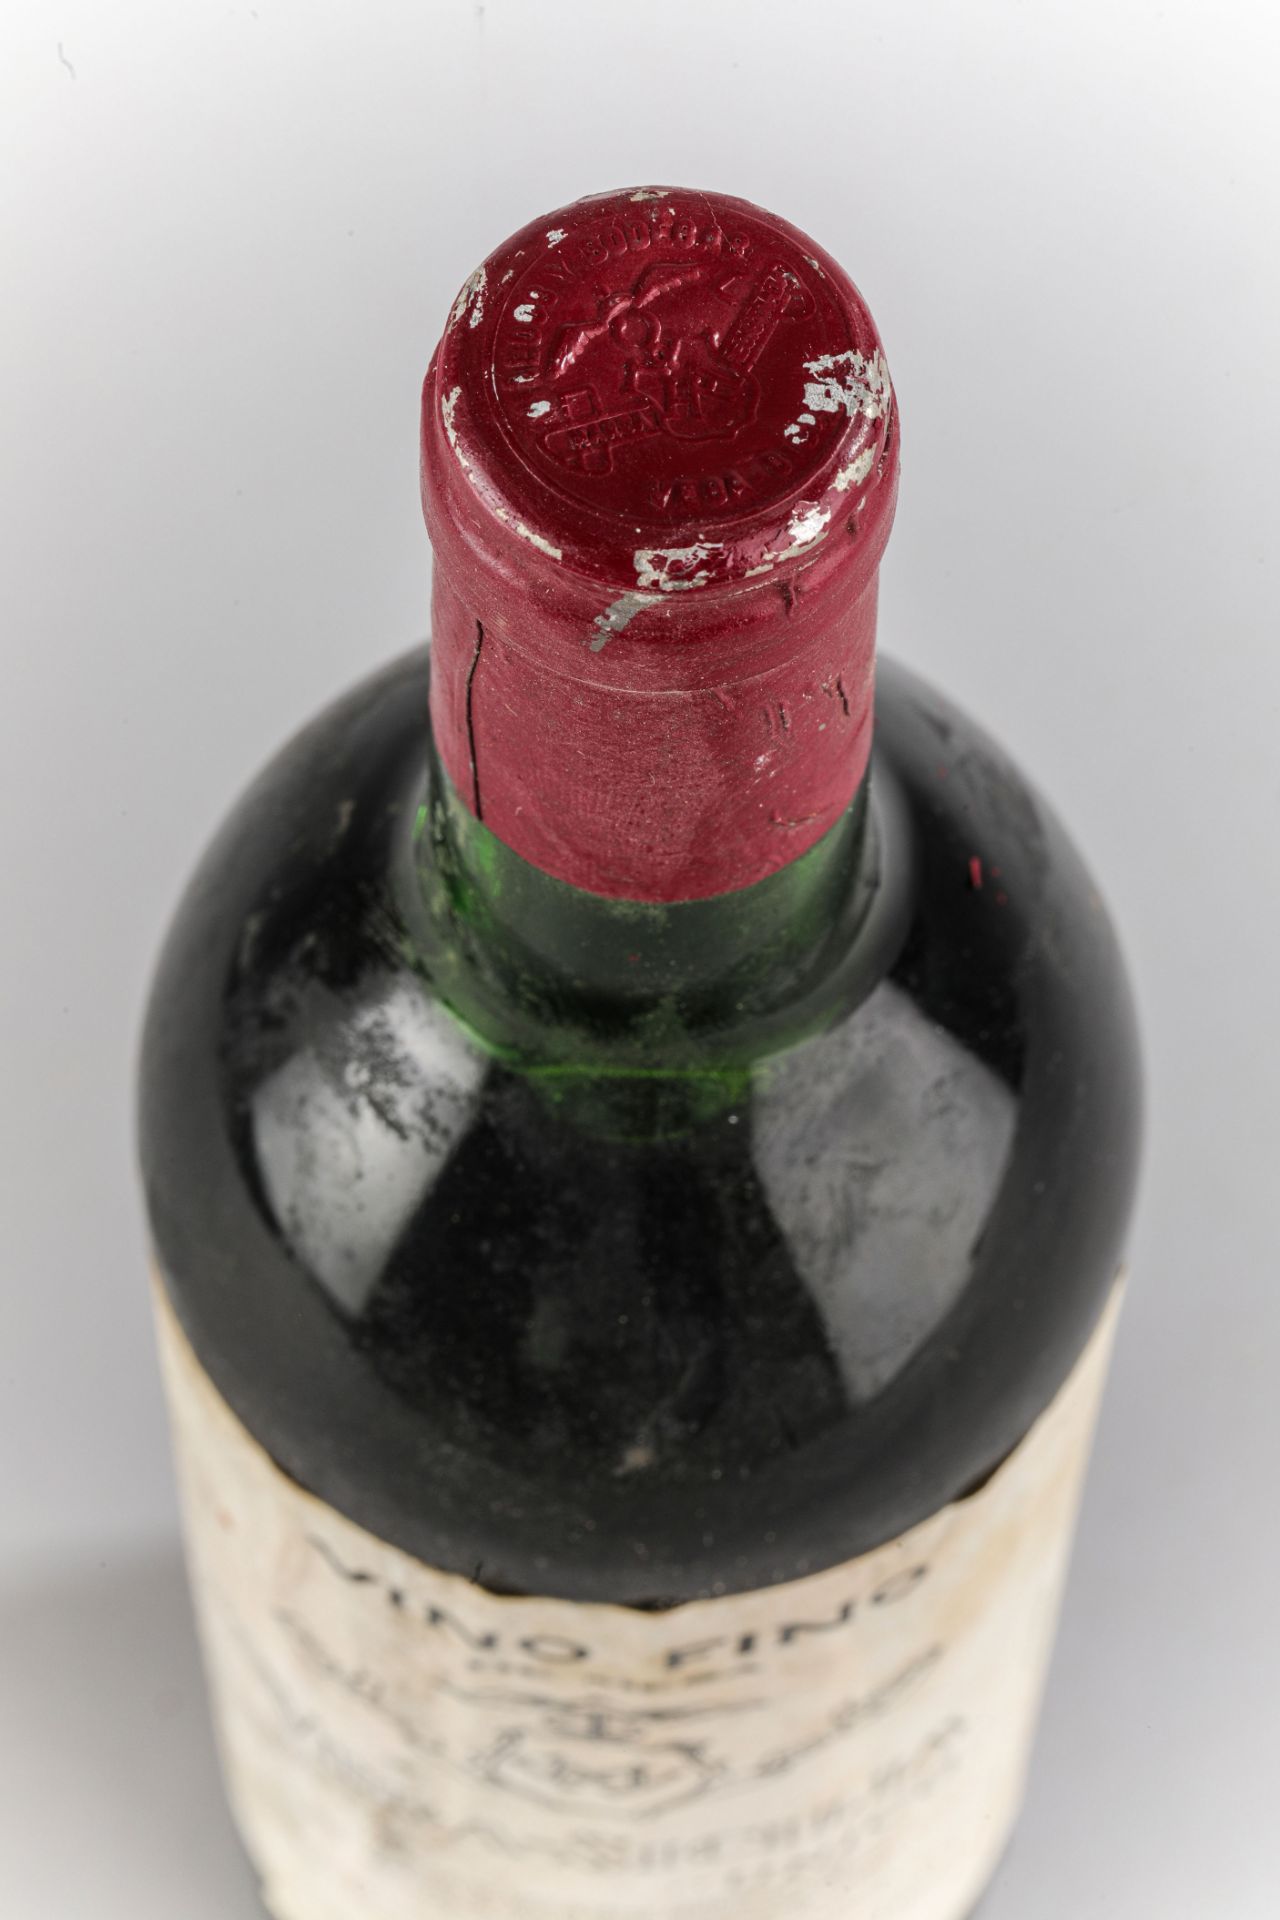 VEGA SICILIA UNICO.1948. Ribera del Duero. Bouteille N°16711 sur production de 17360 bouteilles. - Image 4 of 4